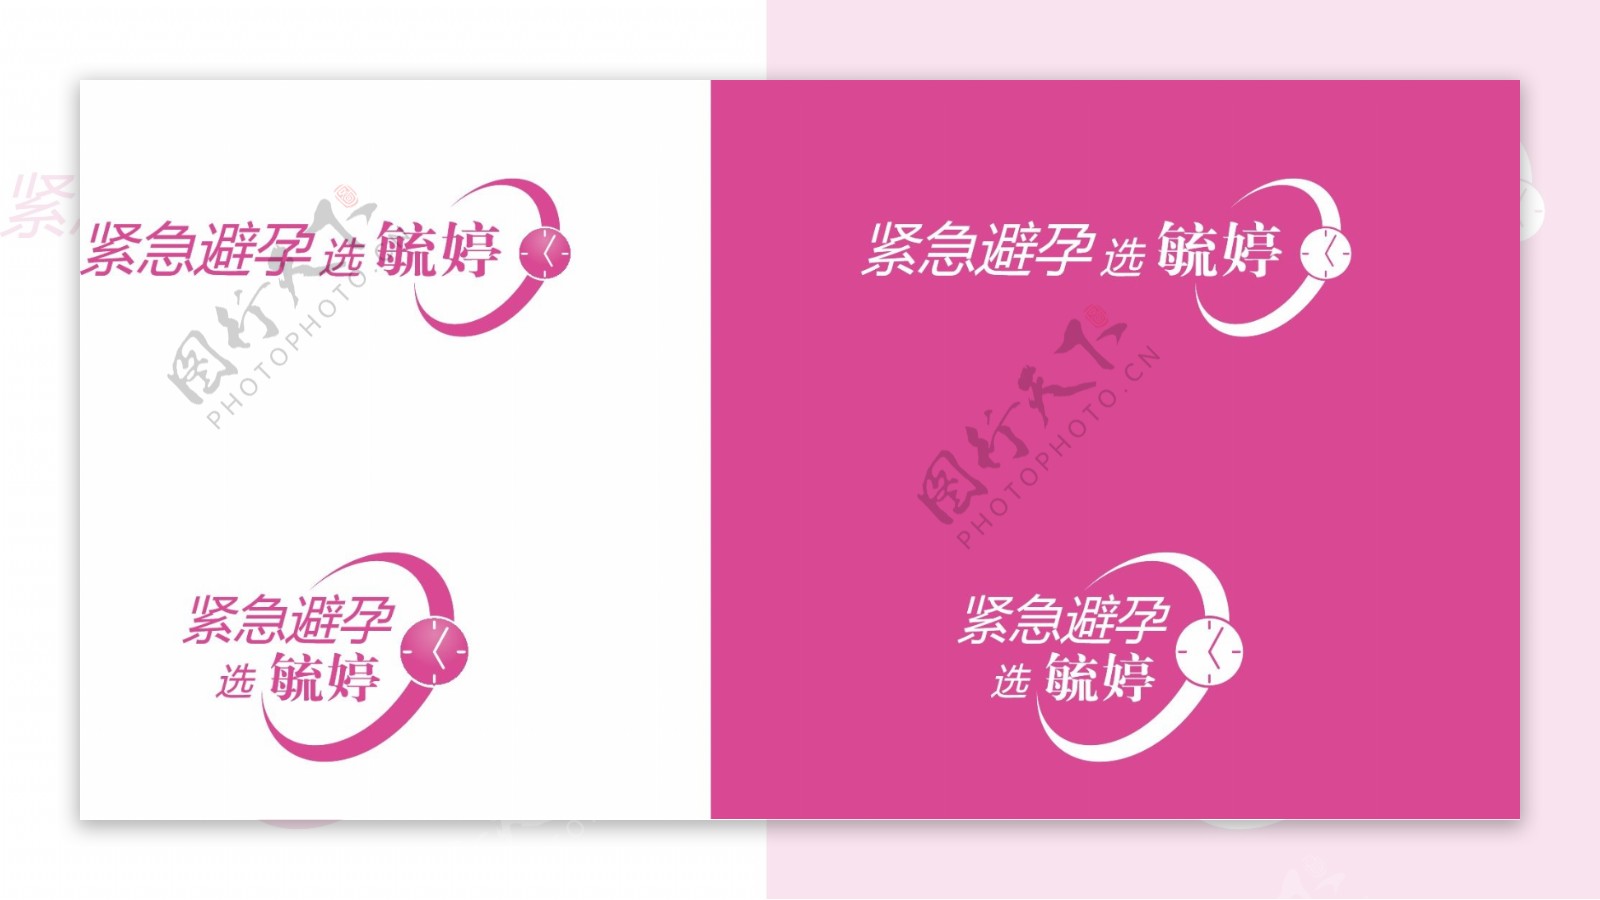 毓婷logo文件